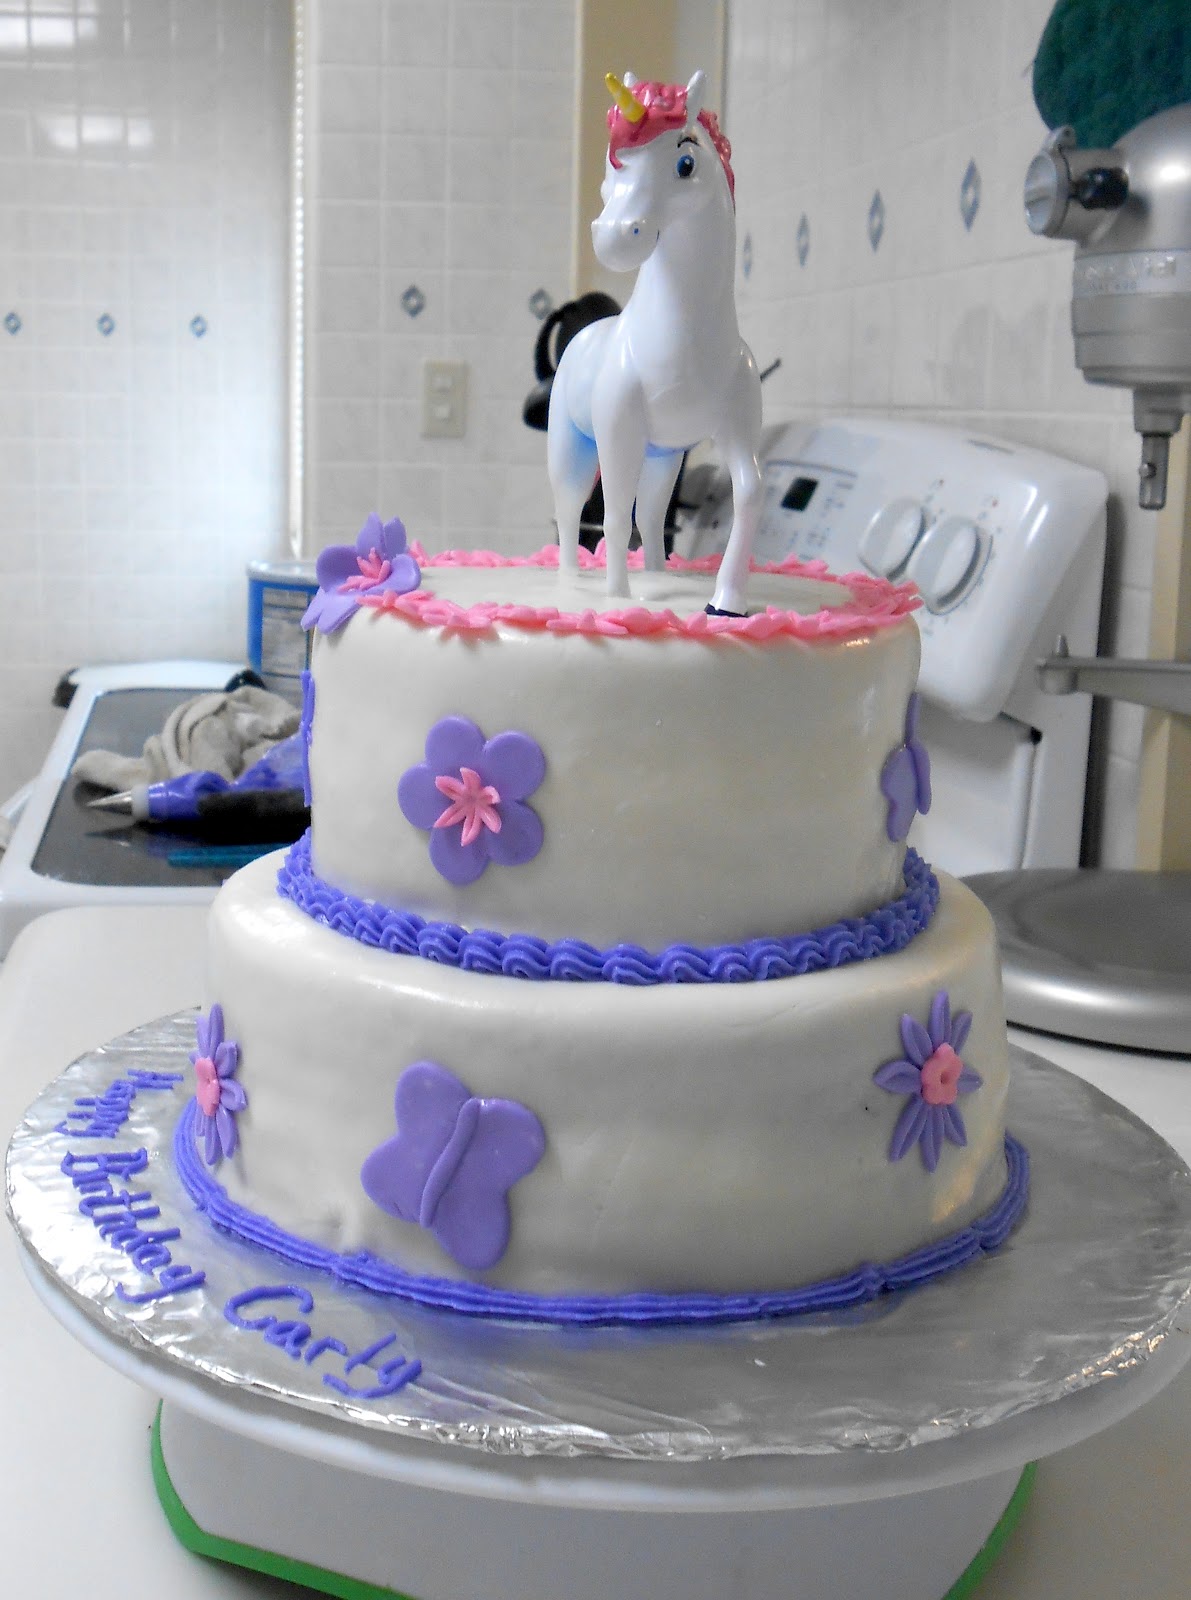 Michelle's Cakes: Unicorn Birthday